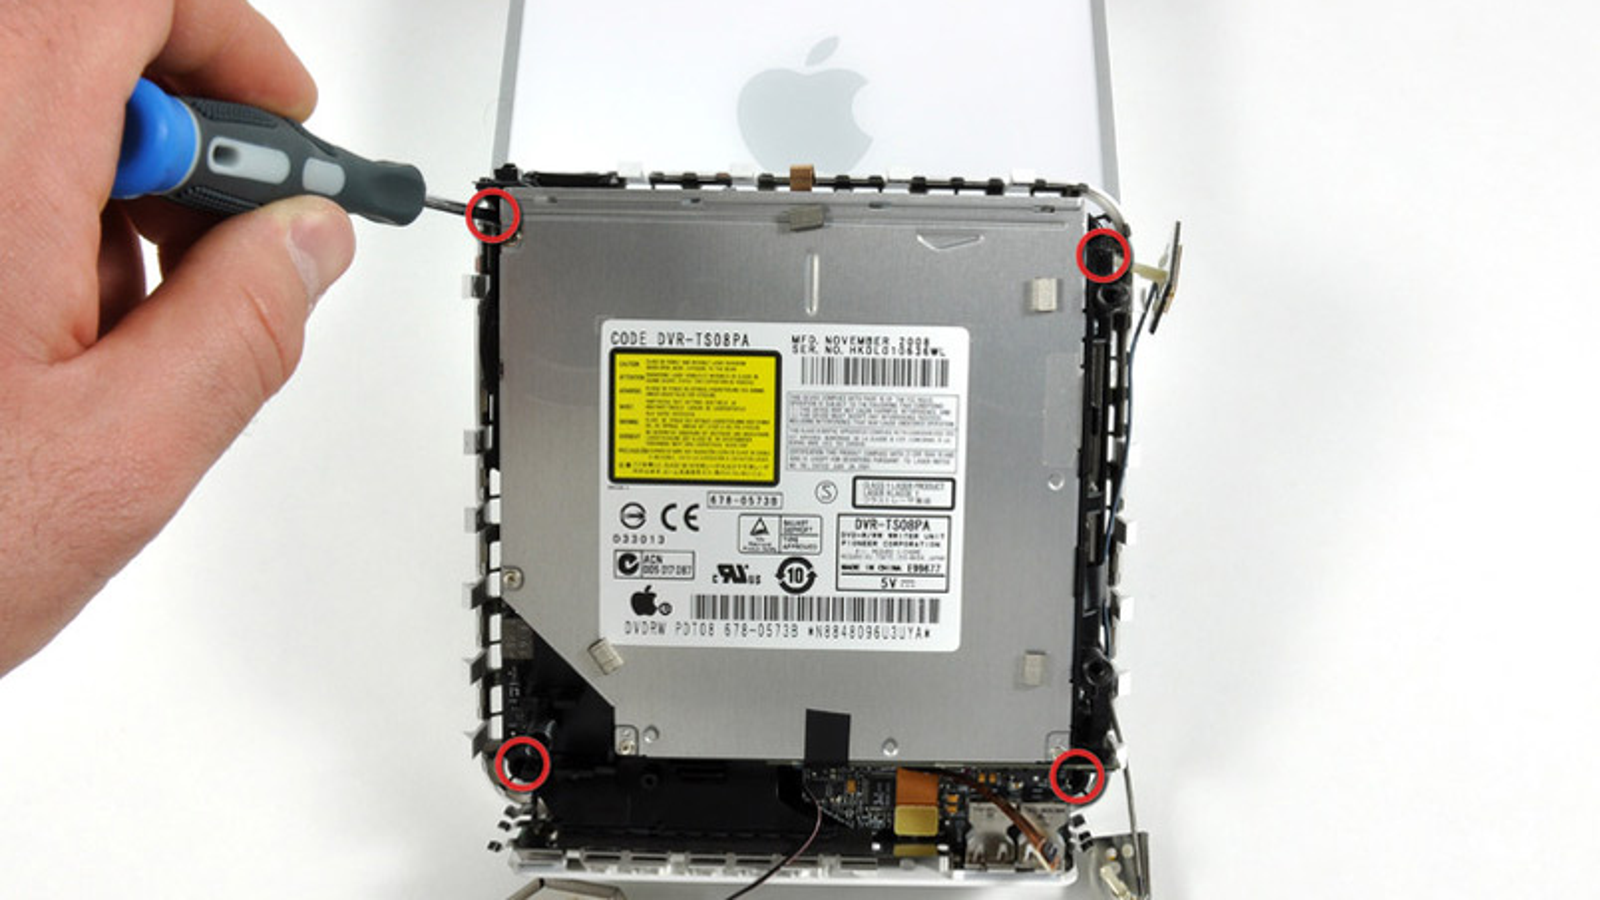 2013 mac mini hard drive replacement